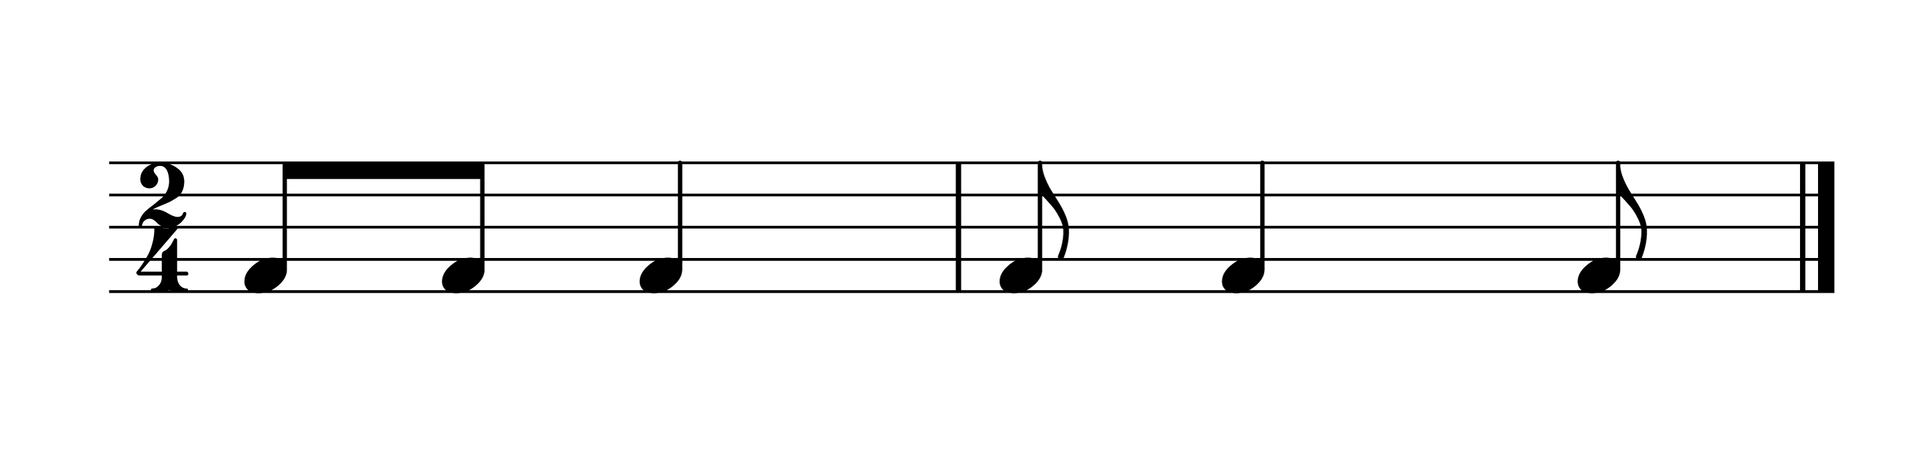 Ilustracja przedstawia zapis nutowy składający się z pięciolinii, na której umieszczony jest zapis nutowy charakterystyczny dla rytmu krakowiaka.